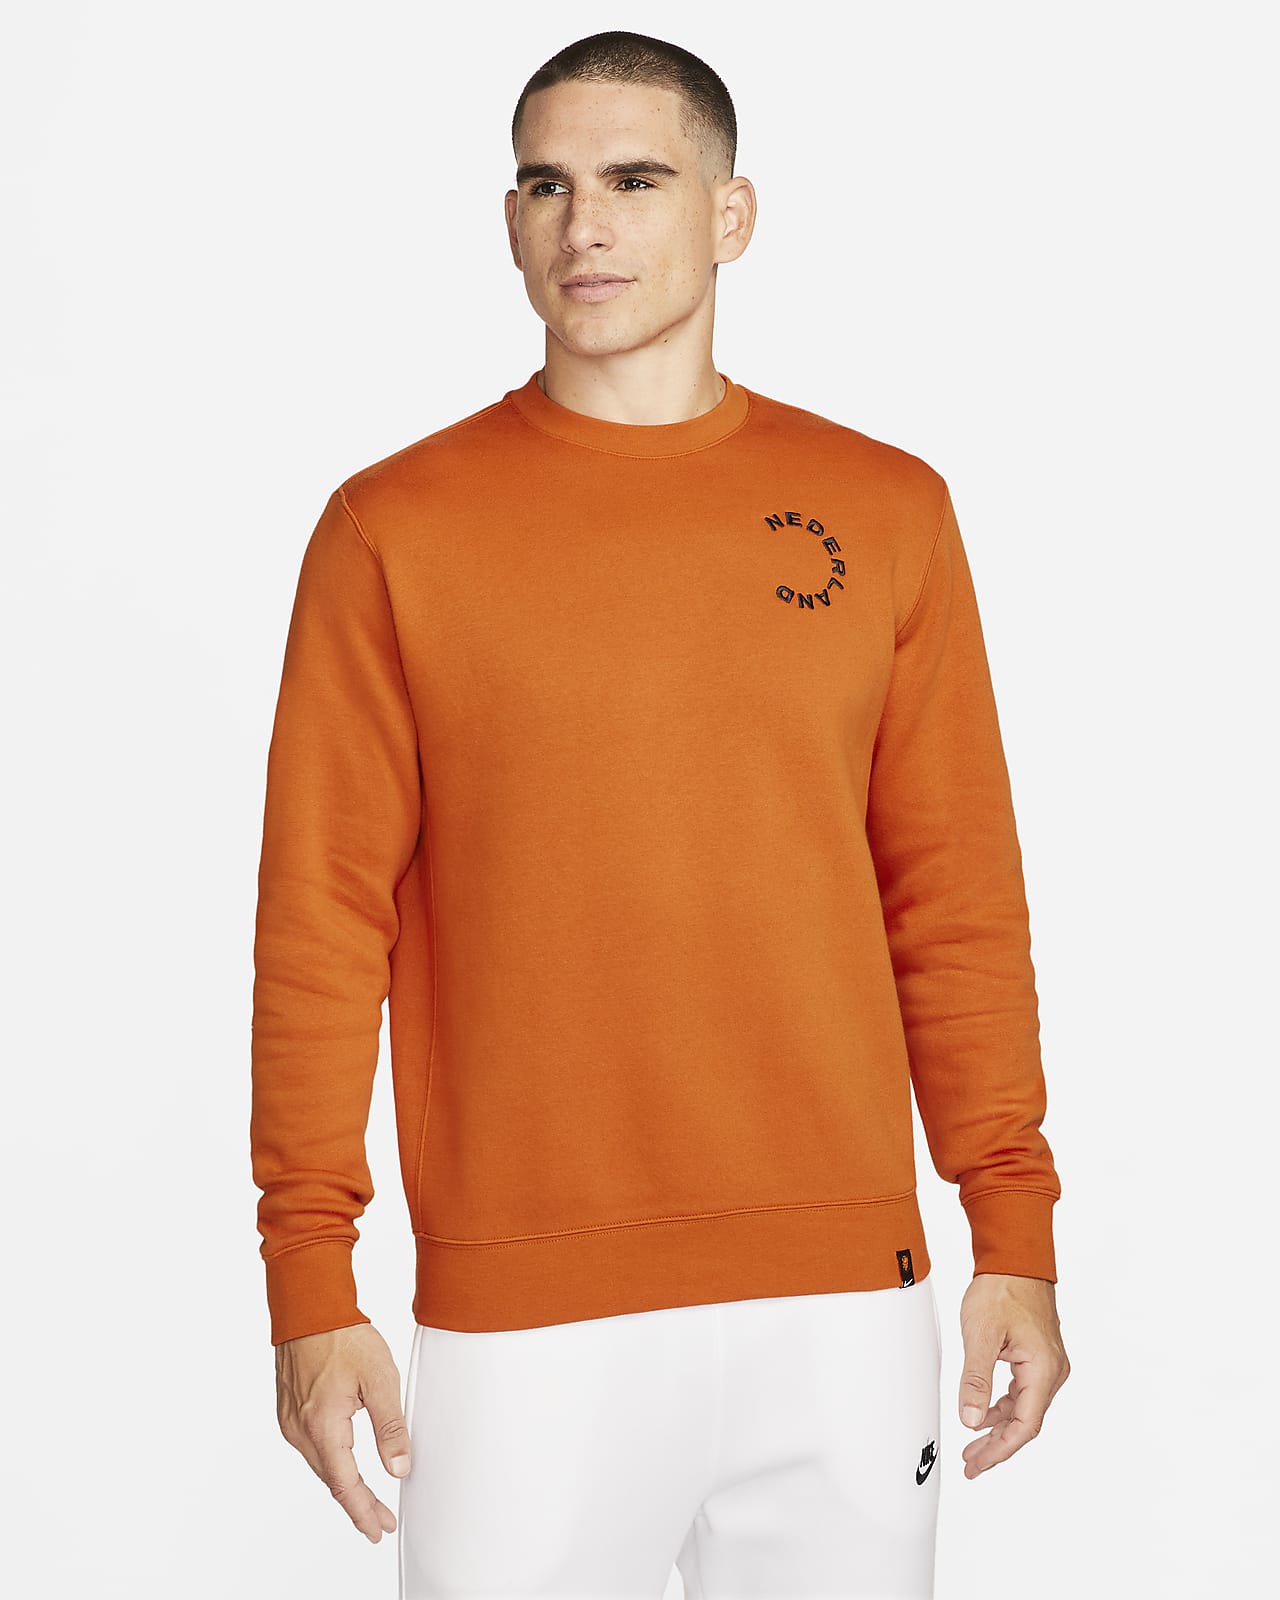 Netherlands Club Men's Sweatshirt.